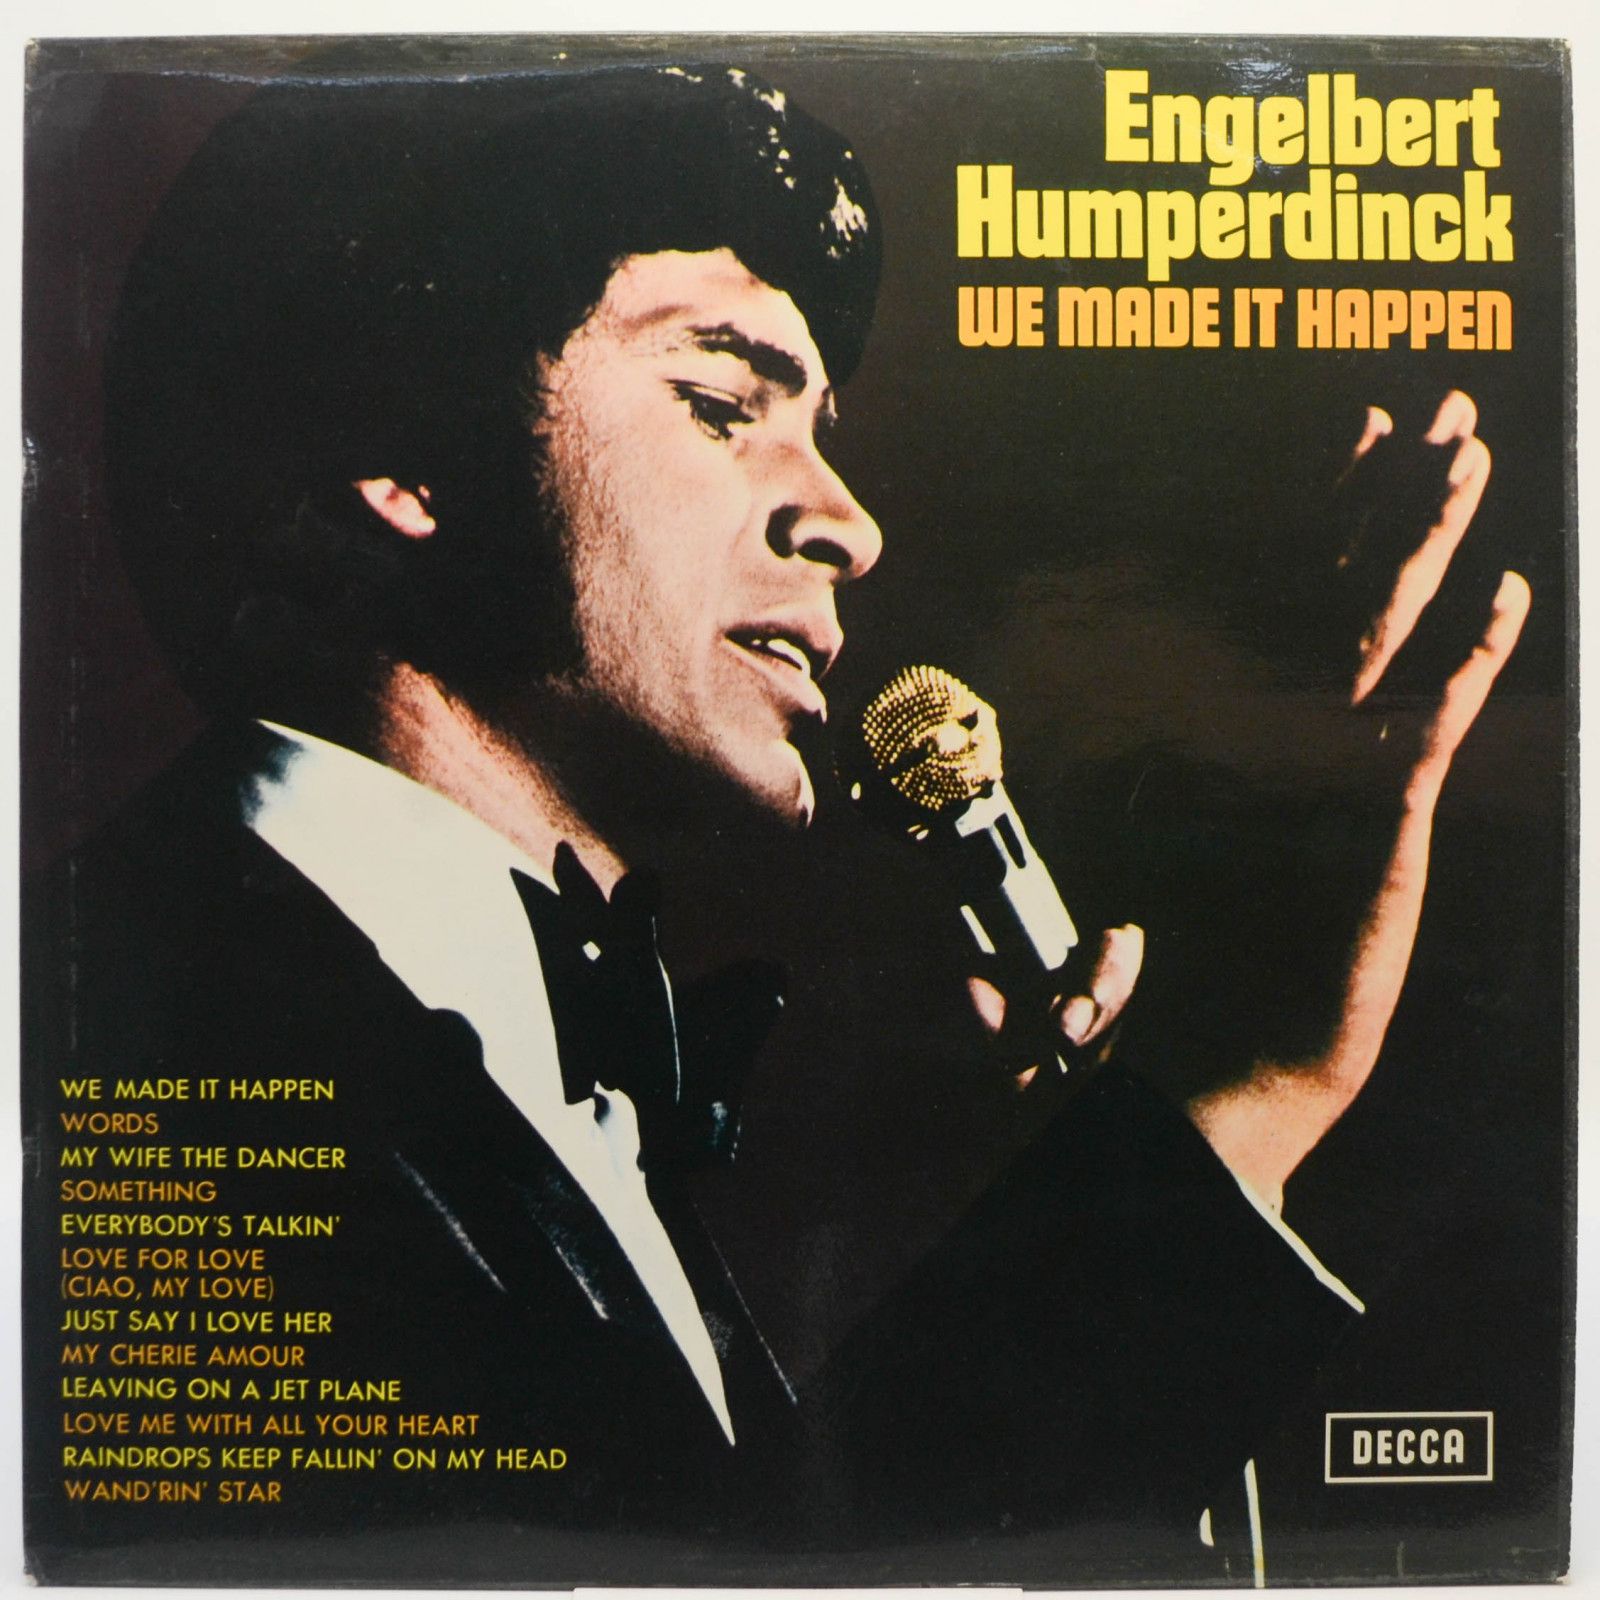 Engelbert Humperdinck — We Made It Happen, 1970